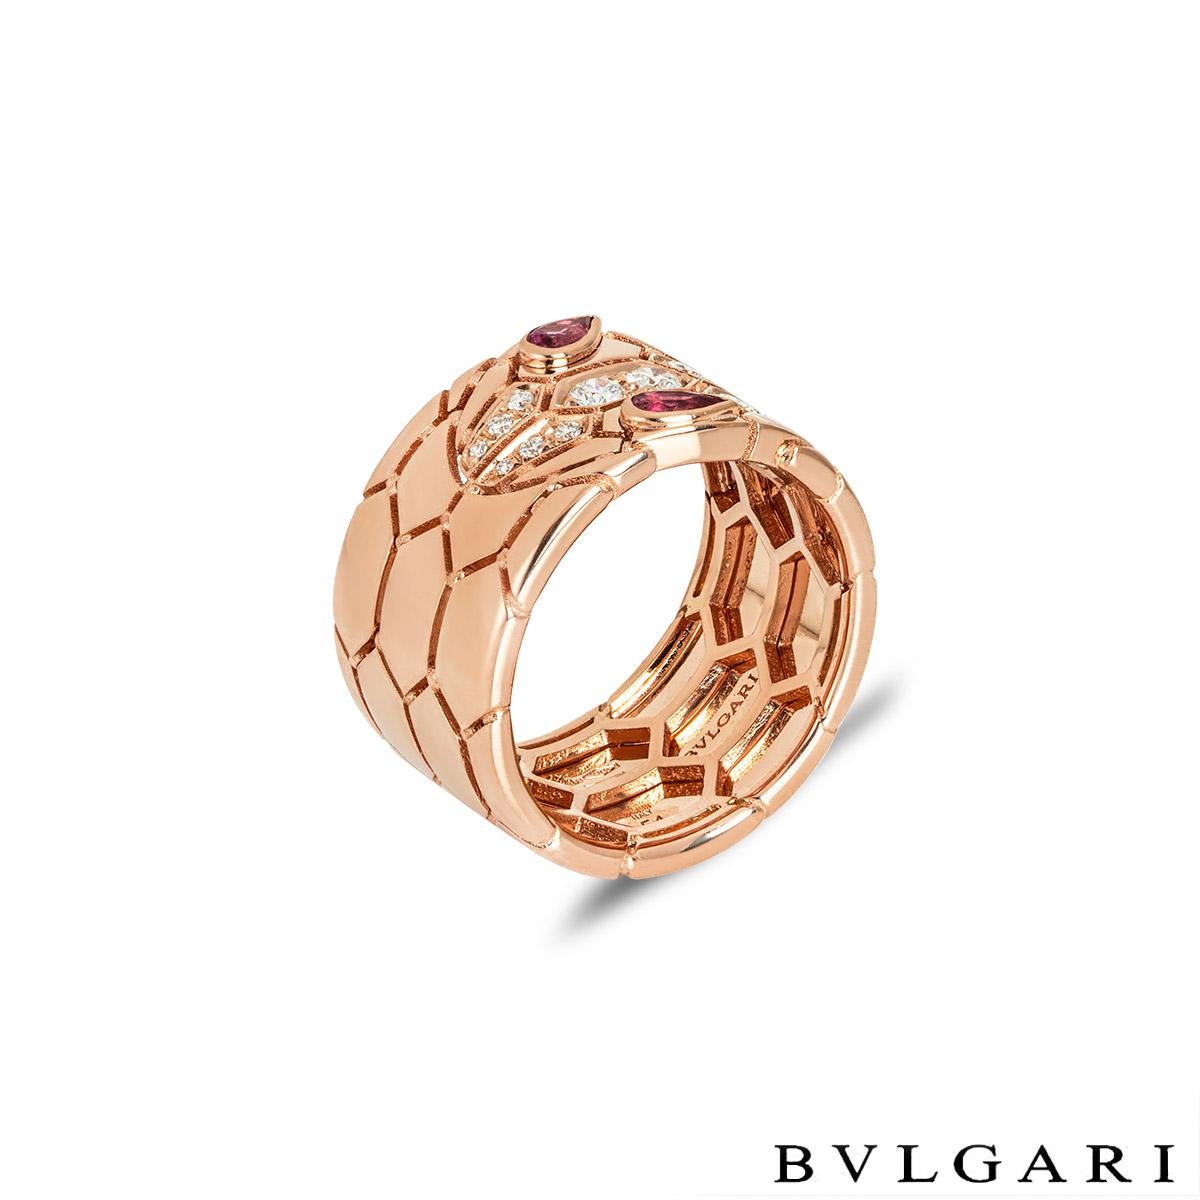 Ein bezaubernder Ring aus 18 Karat Roségold mit Diamanten und Rubelliten von Bvlgari aus der Kollektion Serpenti Seduttori. Der Ring besteht aus einem Schlangendesign mit einem diamantbesetzten Kopf und Rubellit-Augen. Die 12 runden Diamanten im